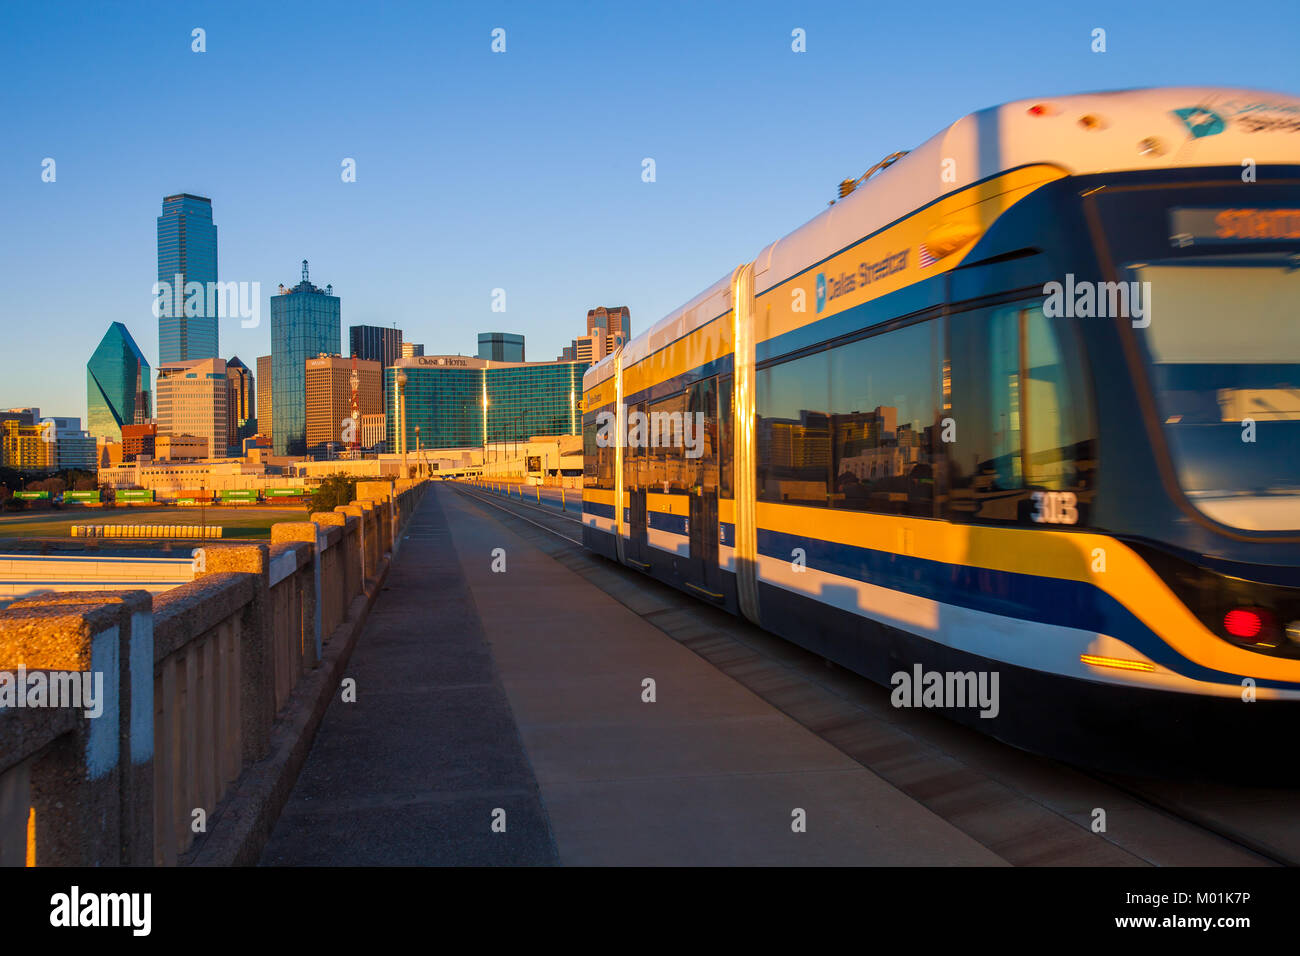 DALLAS, Texas - Dezember 10, 2017 - Umzug der Straßenbahn auf der Houston Street Viadukt mit der Stadt Dallas im Hintergrund Stockfoto